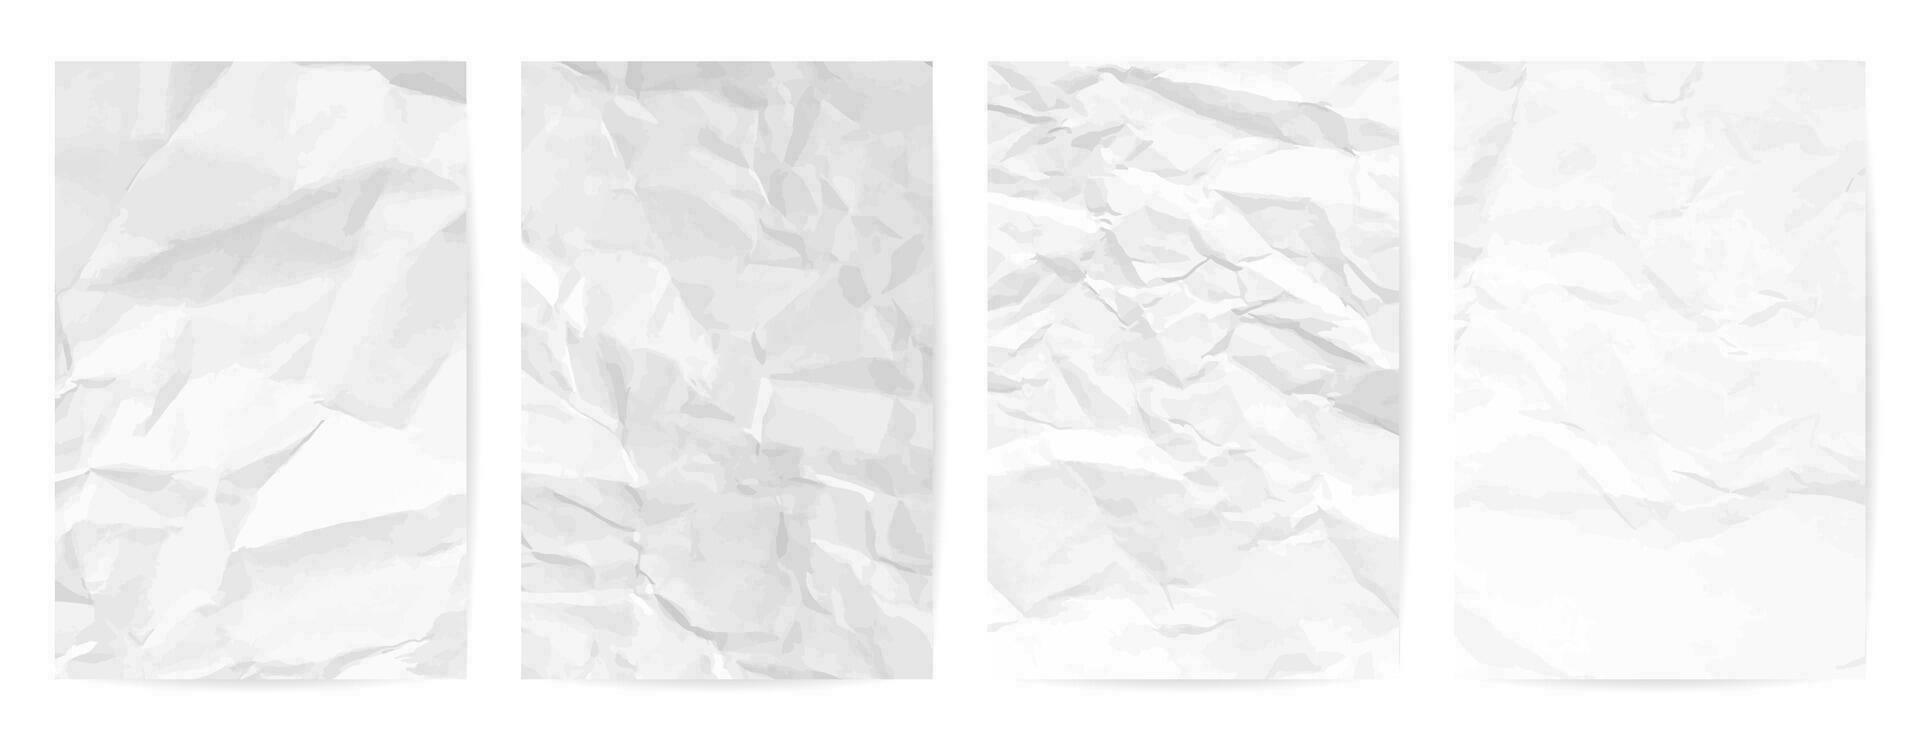 wit schoon verfrommeld papier achtergrond. reeks van vier verticaal verfrommeld leeg papier Sjablonen voor posters en spandoeken. vector illustratie